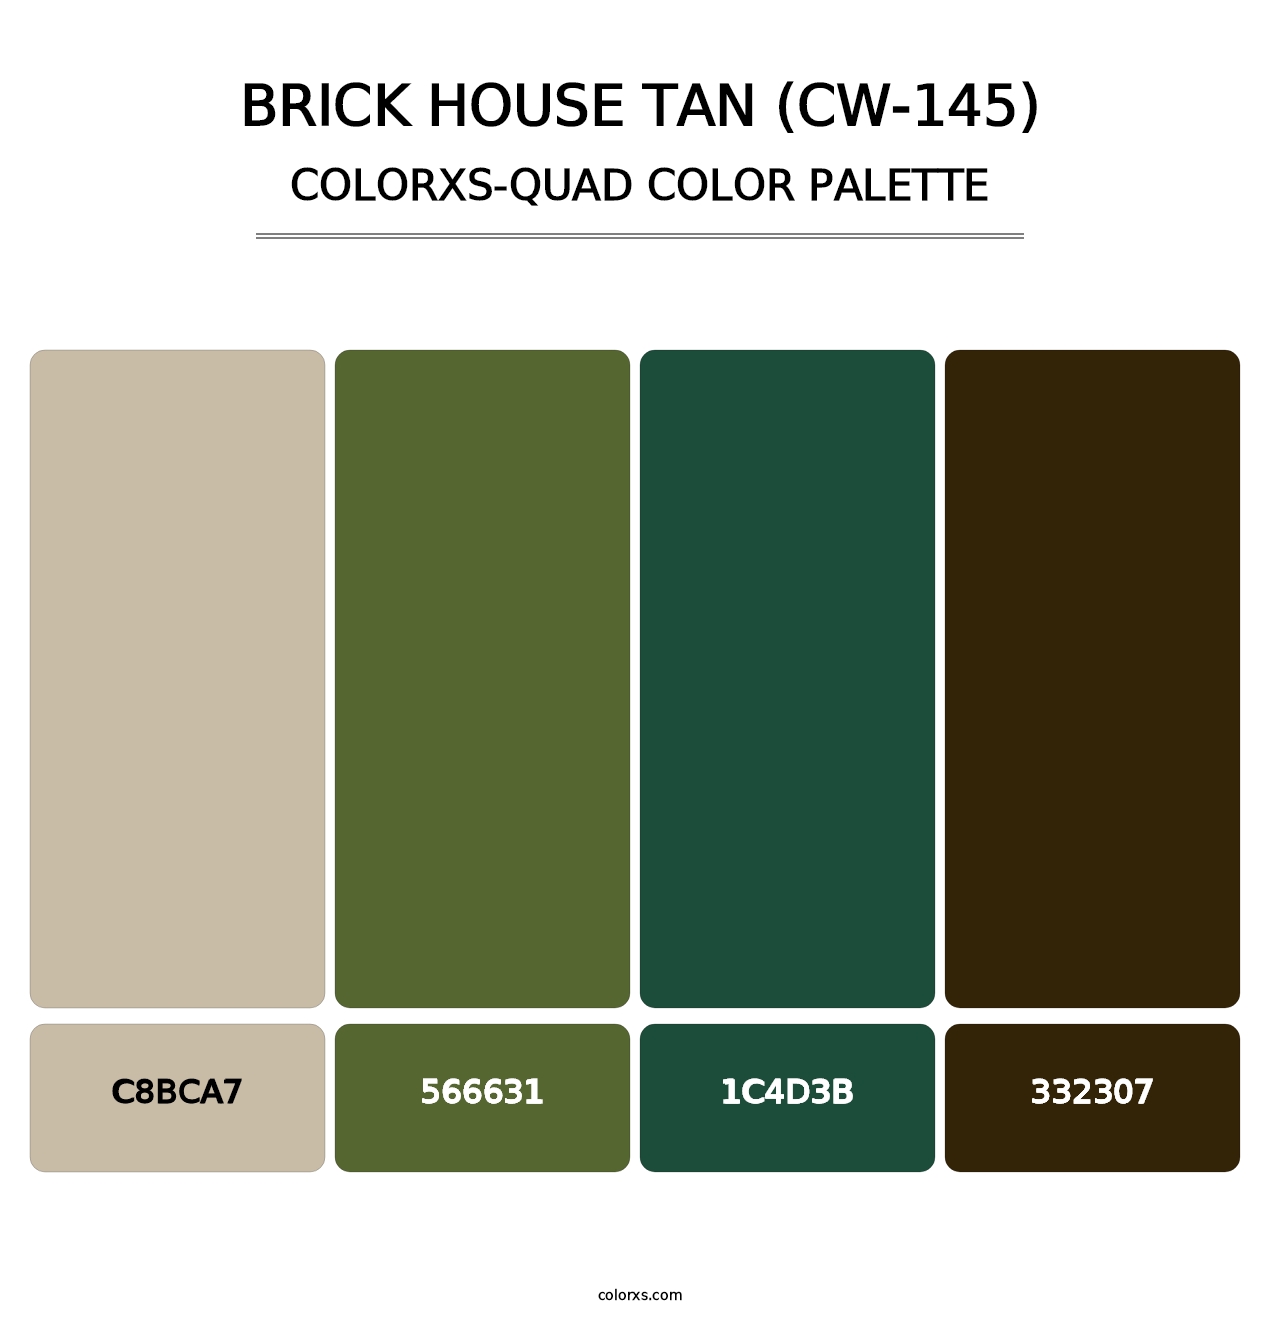 Brick House Tan (CW-145) - Colorxs Quad Palette